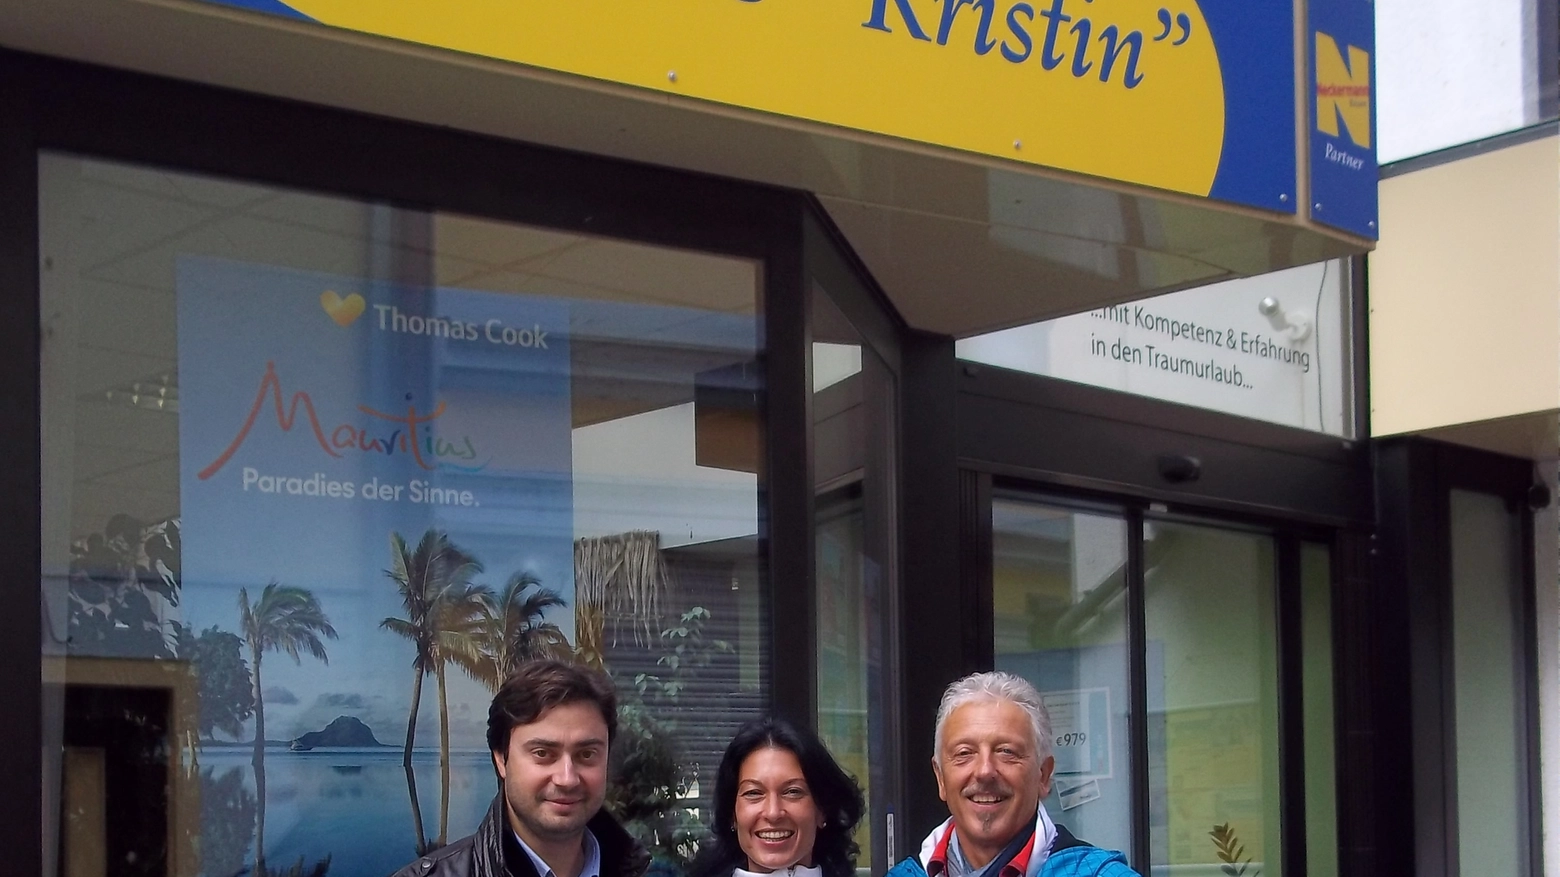 Nella foto l'assessore Gozzini con i rappresentanti del Tour Operator "Kristin"